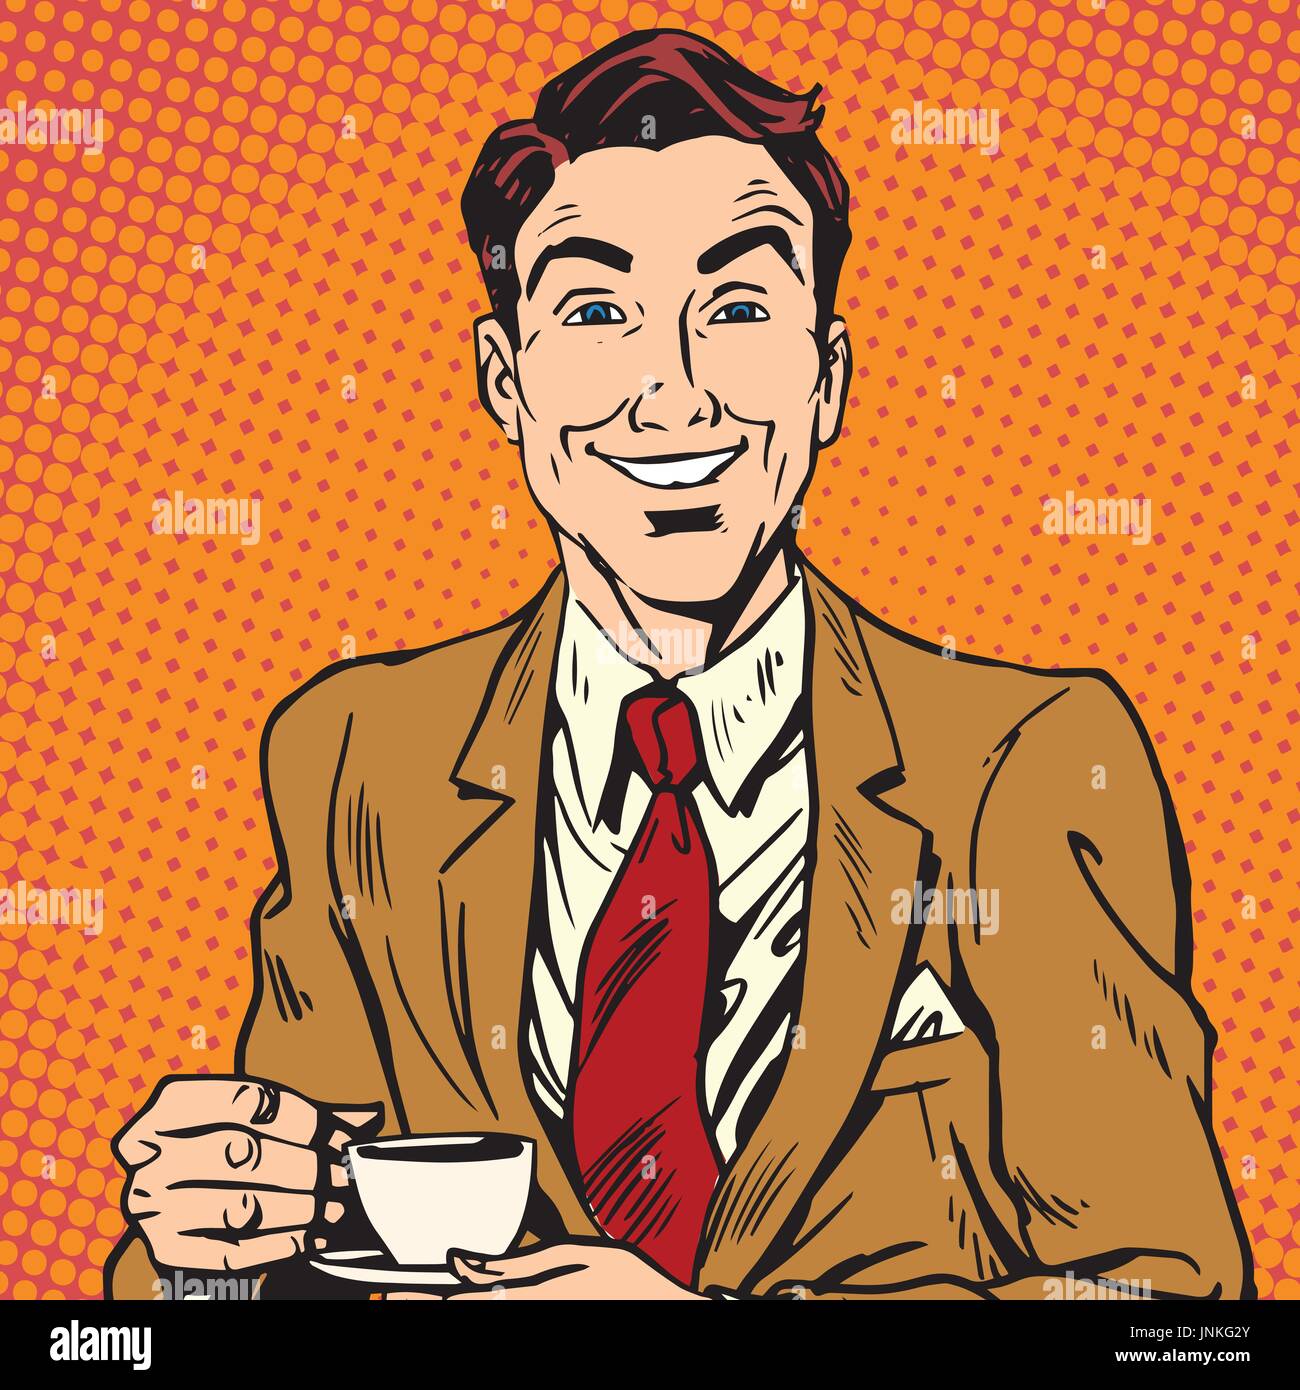 Avatar Porträt des Menschen, die Kaffee trinken. Pop-Art-Retro-Vektor-illustration Stock Vektor